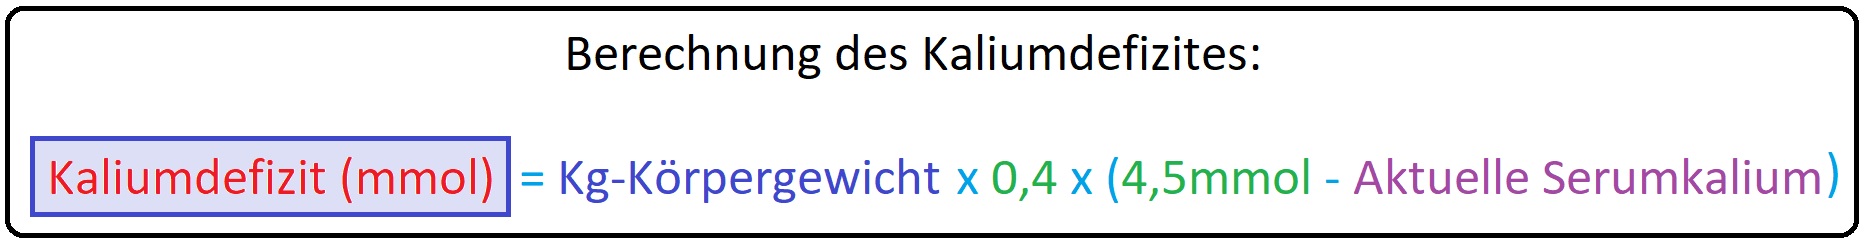 952 Berechnung des Kaliumdefizites